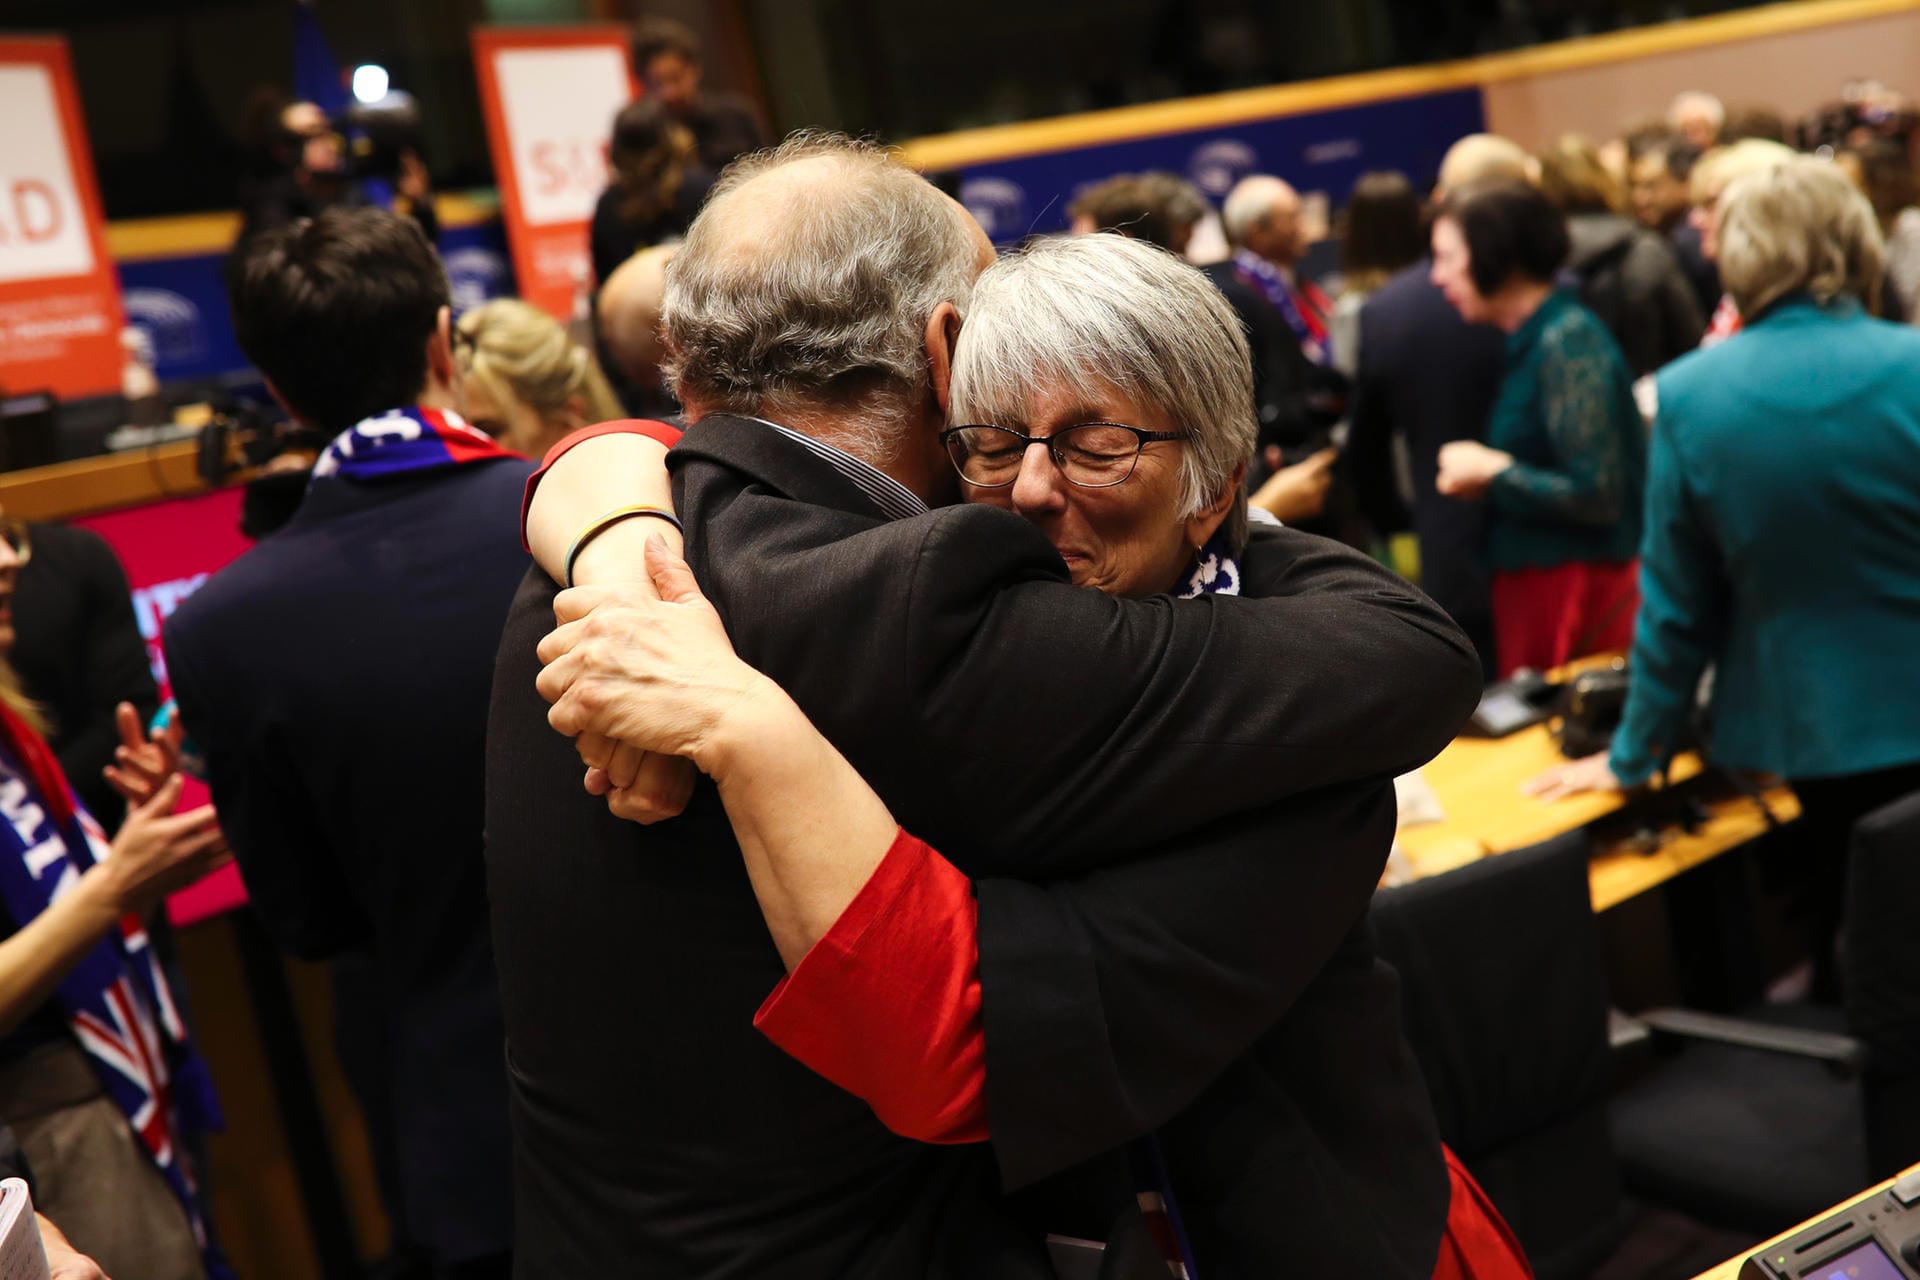 Nicht Lebe wohl, sondern Auf Widersehen: Die britische Abgeordnete Julie Ward nimmt einen Parlamentskollegen in den Arm.